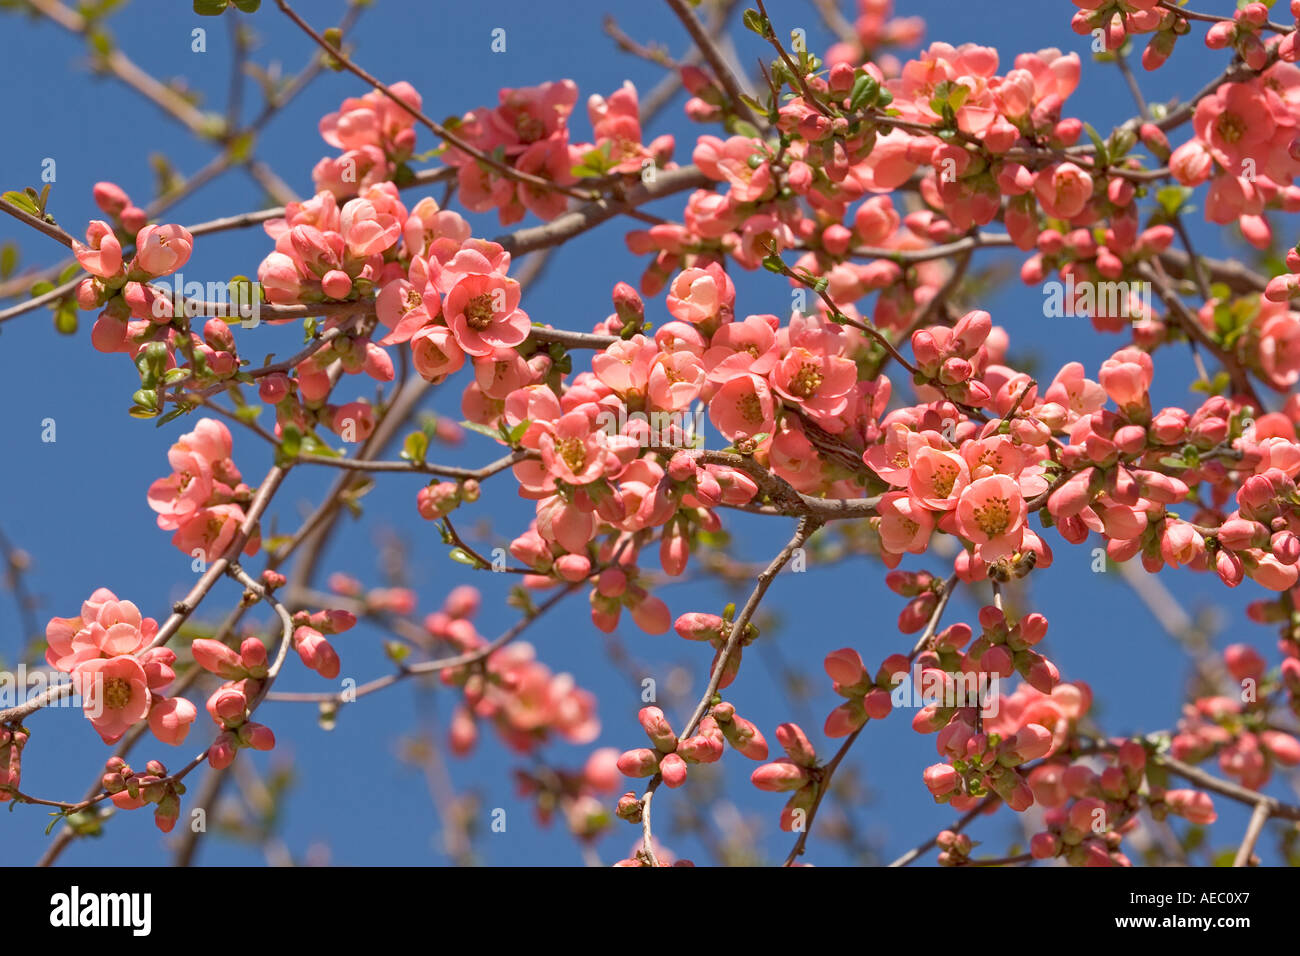 A blossoming branch of Japan Flowering Quince ((Chaenomeles japonica). Branche fleurie de Cognassier du Japon. Stock Photo